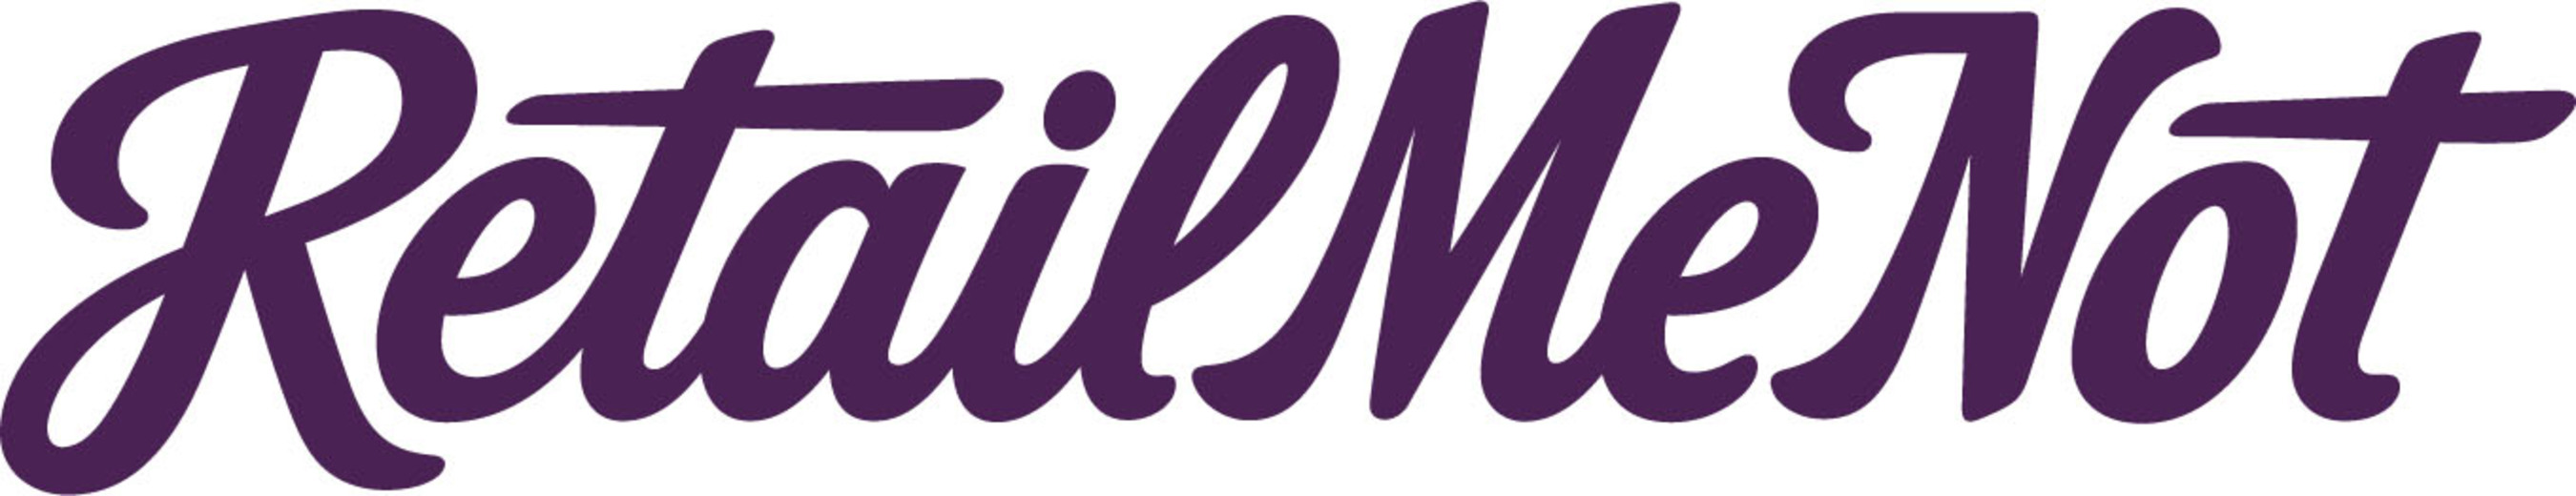 RetailMeNot, Inc. logo. (PRNewsFoto/RetailMeNot, Inc.) (PRNewsFoto/)